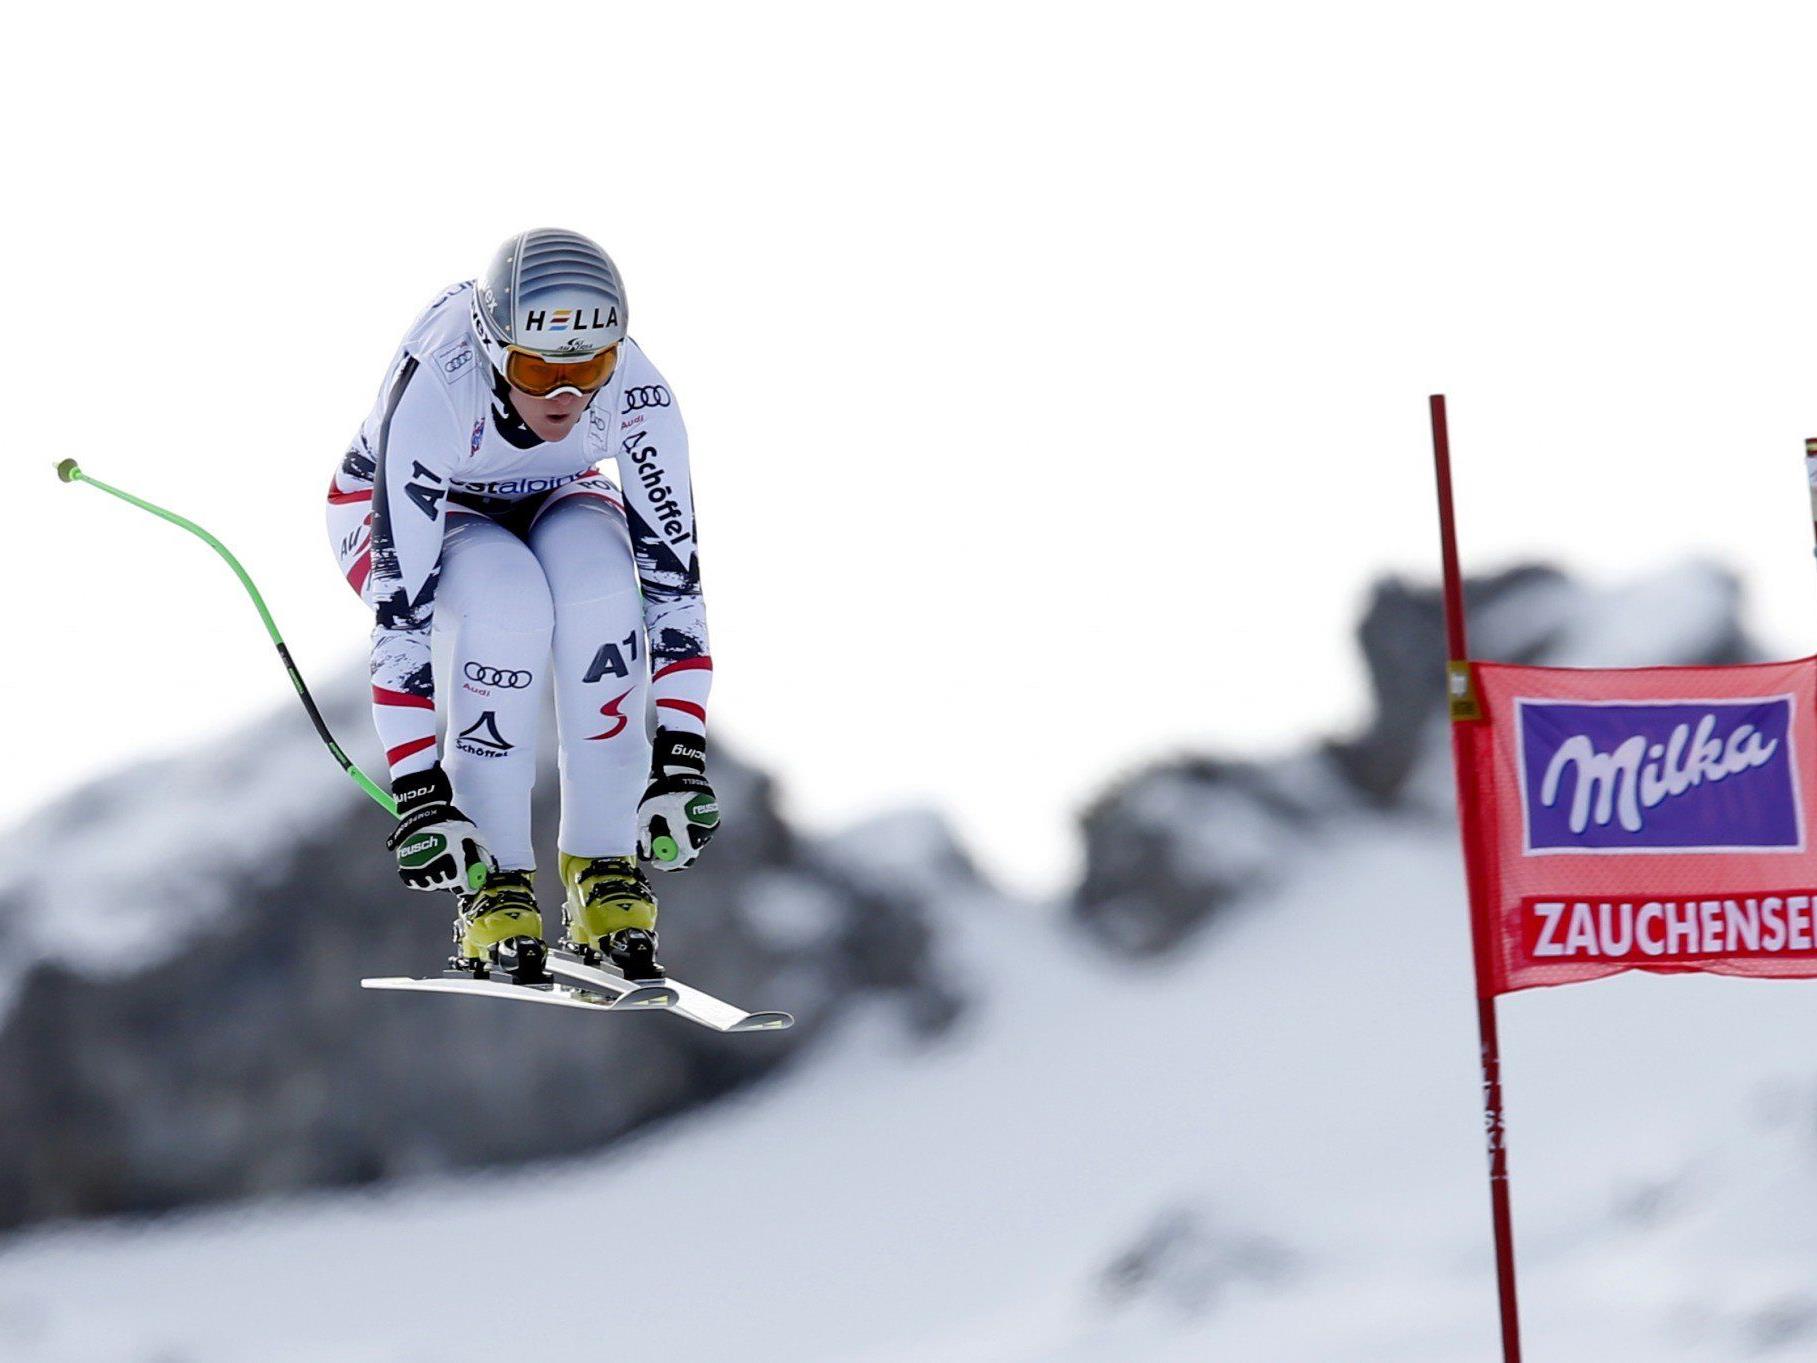 Höfl-Riesch größte Konkurrentin - Fenninger kann Slalomperformance nicht einschätzen.